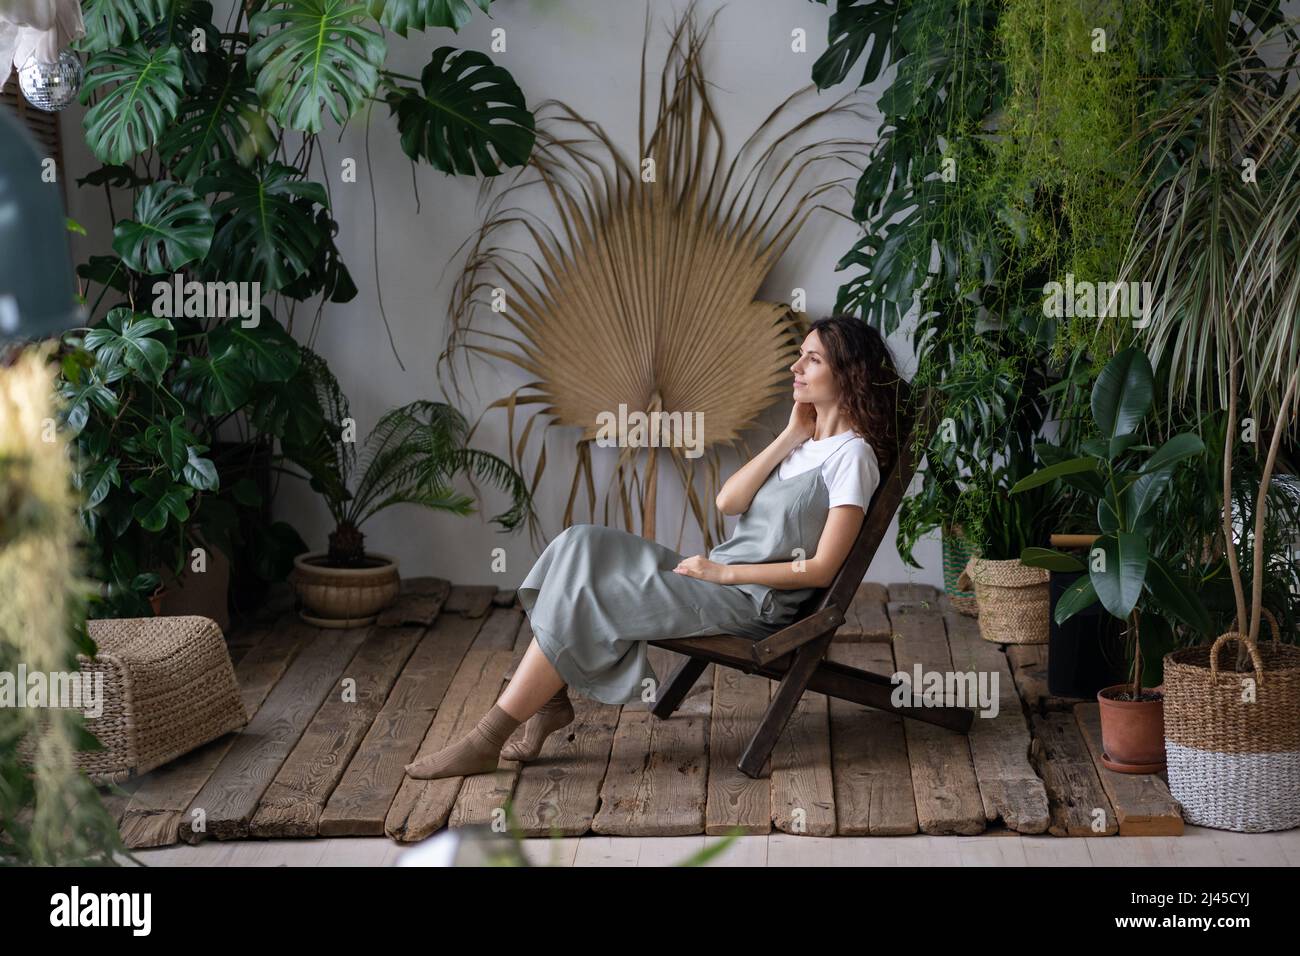 Giovane donna rilassata sedersi su una comoda poltrona in un elegante giardino interno con piante esotiche verdi Foto Stock